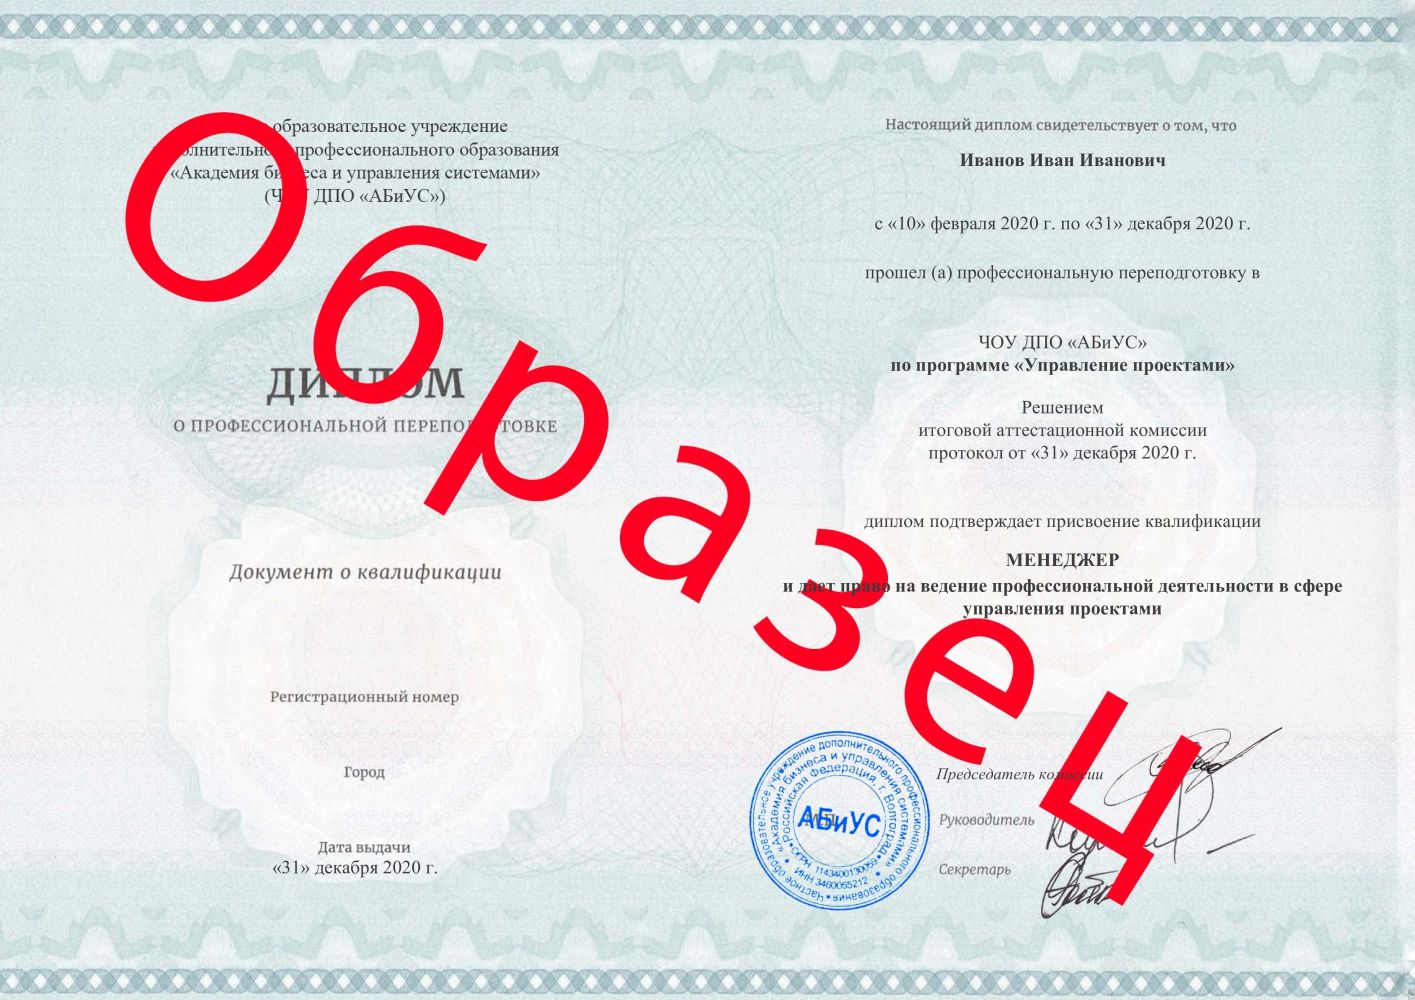 Диплом Управление проектами 510 часов 14625 руб.